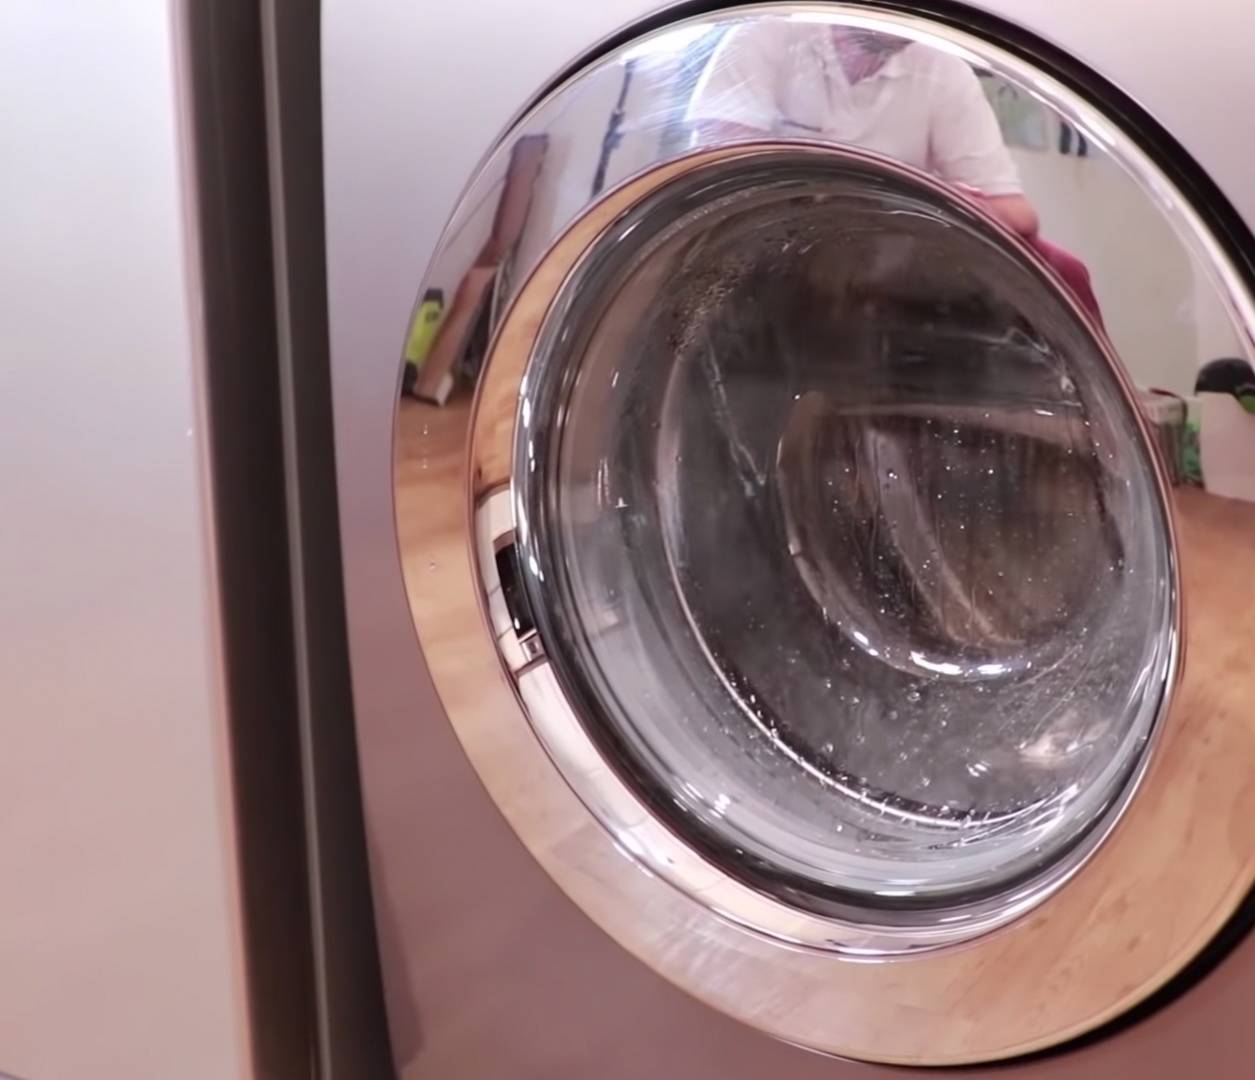 Le joint de la machine à laver est sale et malodorant ? Voici comment le  nettoyer efficacement